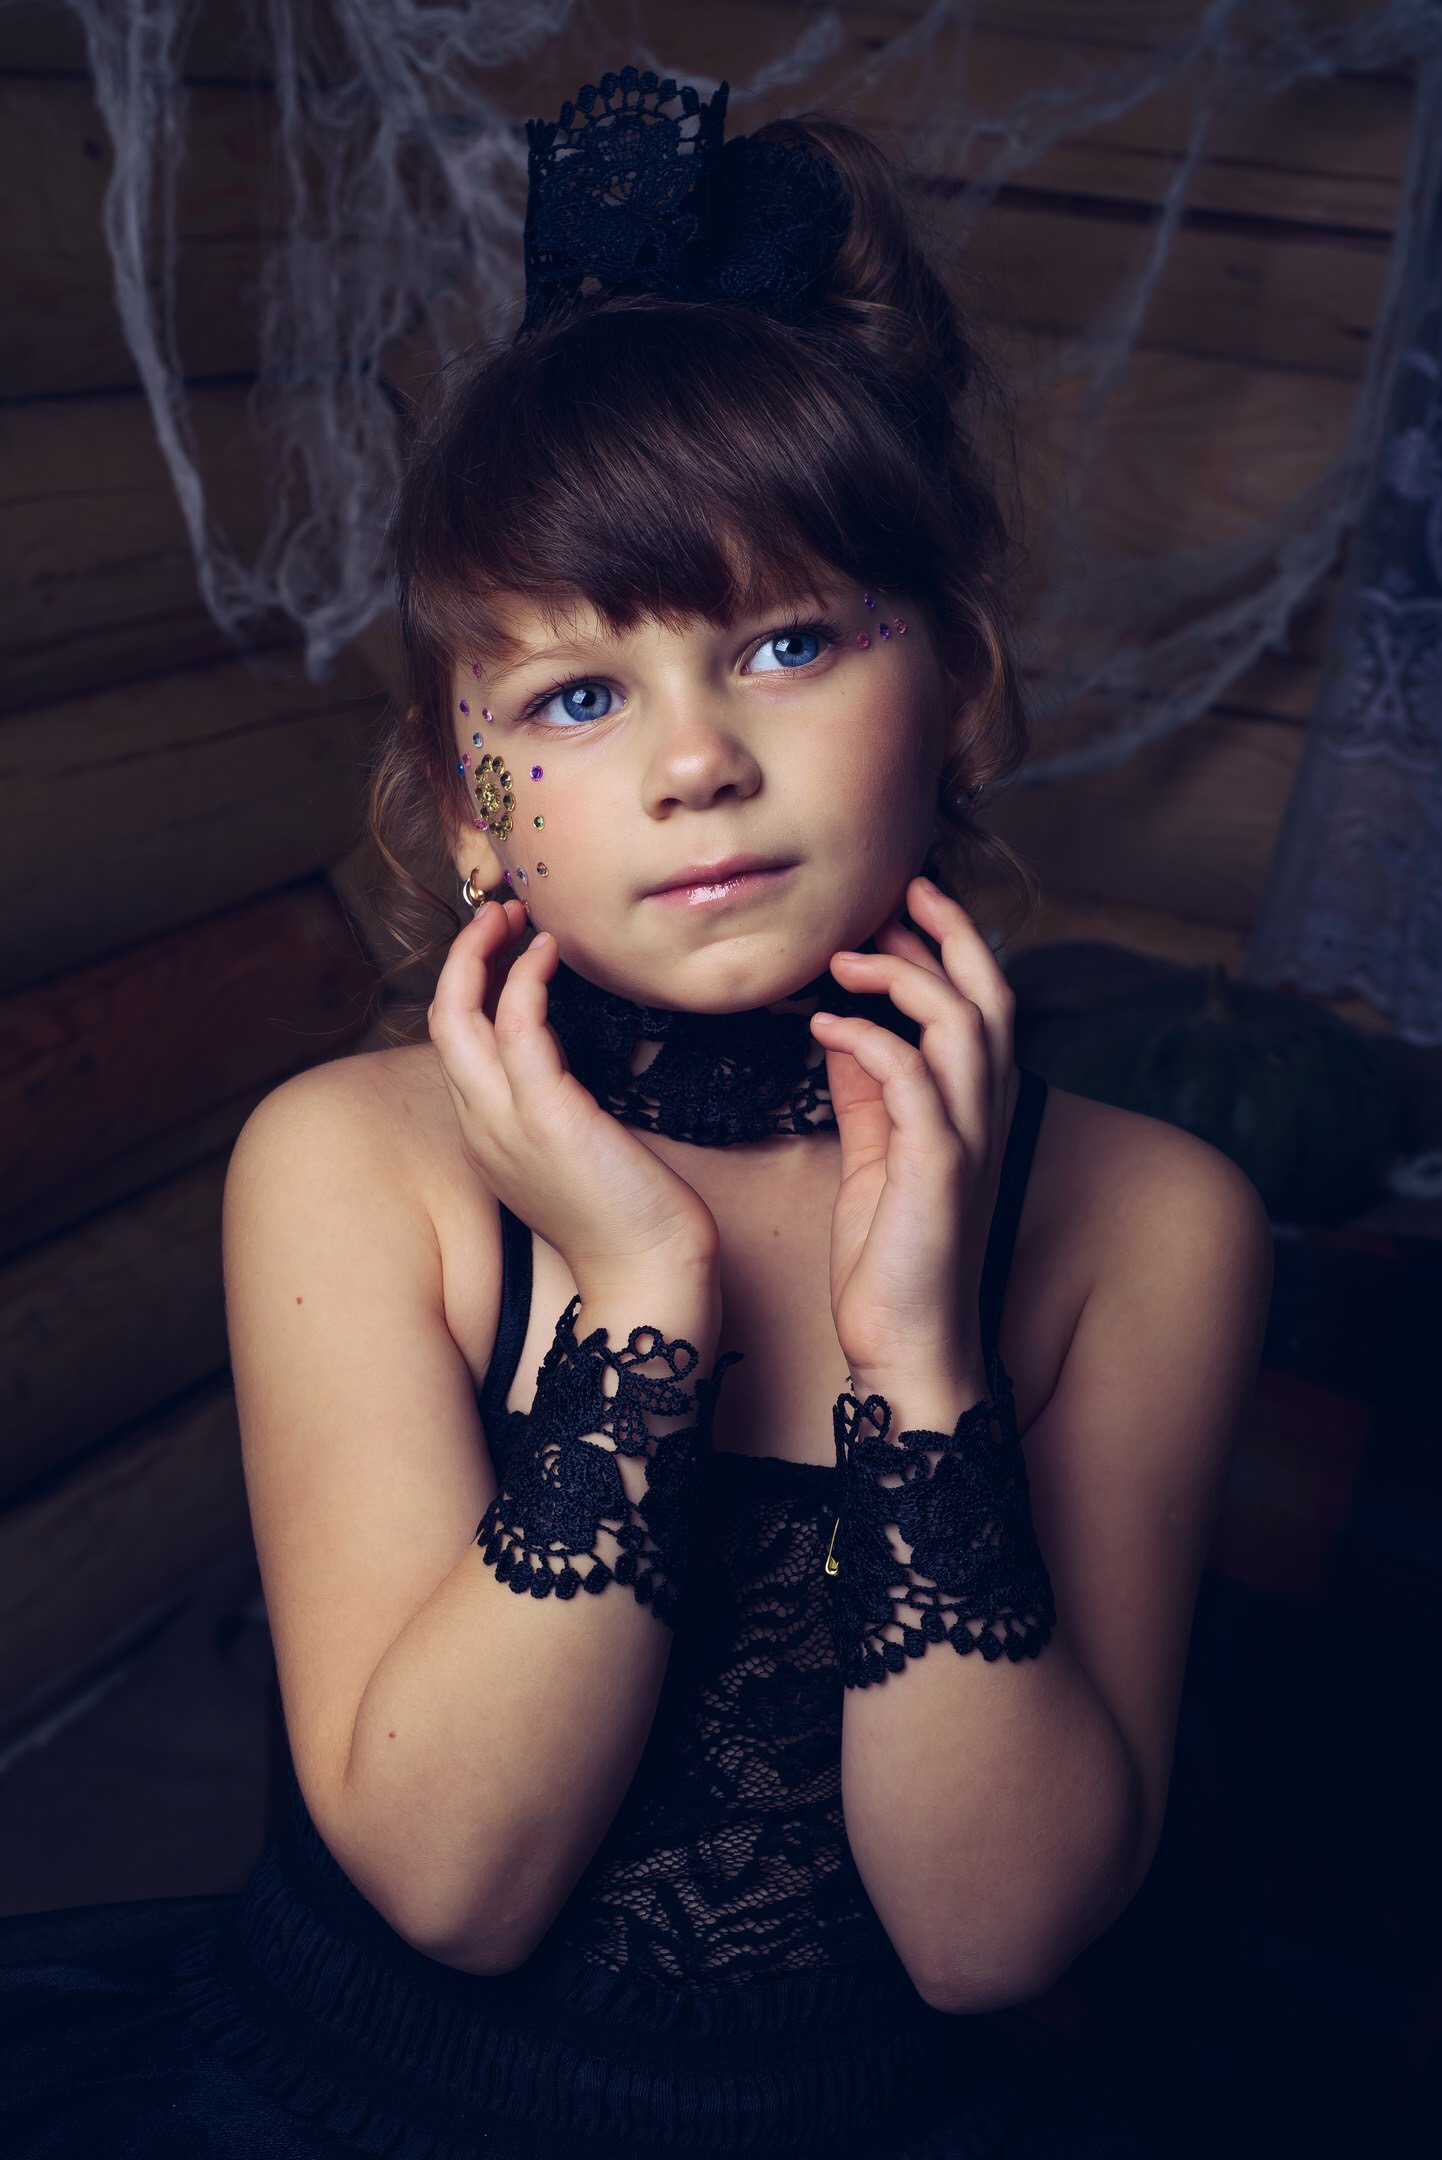 Диана Белотелова - аккредитованная модель для участия в подиумных показах на Междунродной Детской Неделе моды